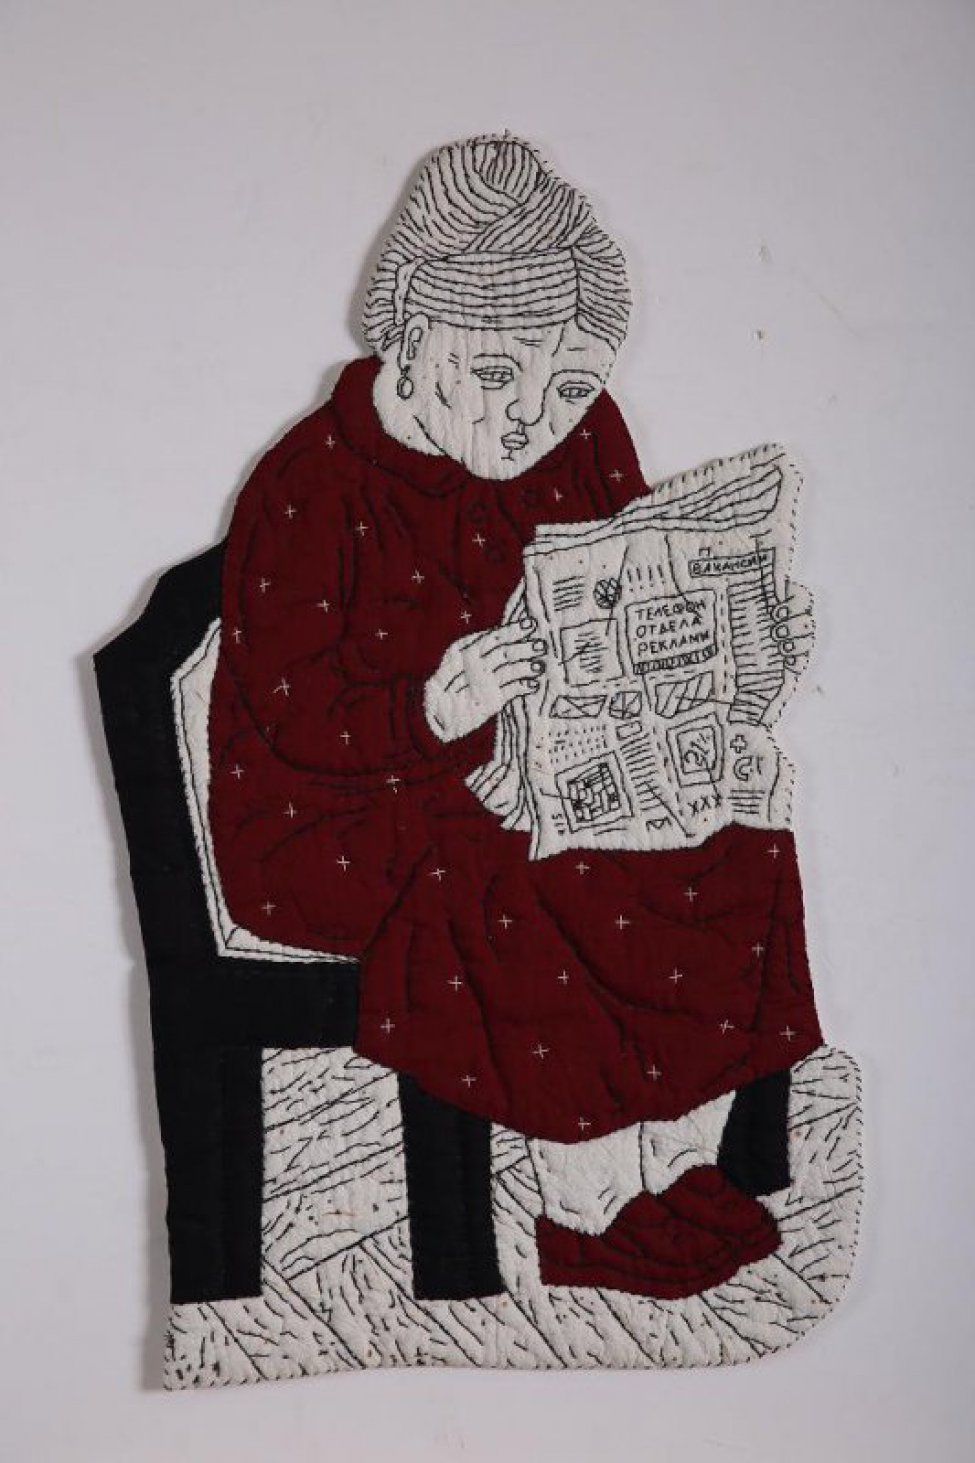 По абрису вырезана сидящая женская фигура в темно-красном платье, с газетой в руках, на черном стуле.  Рисунок фигуры  вышит черными нитями.  Женщина изображена вправо, с высокой прической, с овальной серьгой в ухе, в темно-красных туфлях, платье расшито отдельными белыми крестиками, в тексте газеты слова: "ВАКАНСИИ", "ТЕЛЕФОН | ОТДЕЛА | РЕКЛАМЫ",  "21", "415", МОНОГРАММА "ПМ".  Местами по поверхности белой ткани небольшие пятна и полоски прожига. Вся фигура по краю обшита черной нитью. Внутри всей фигуры слой ватина. Оборот подложен белой бязью и простеган черными нитями.  С оборота в верхней части пришиты 2  плоских стальных кольца.